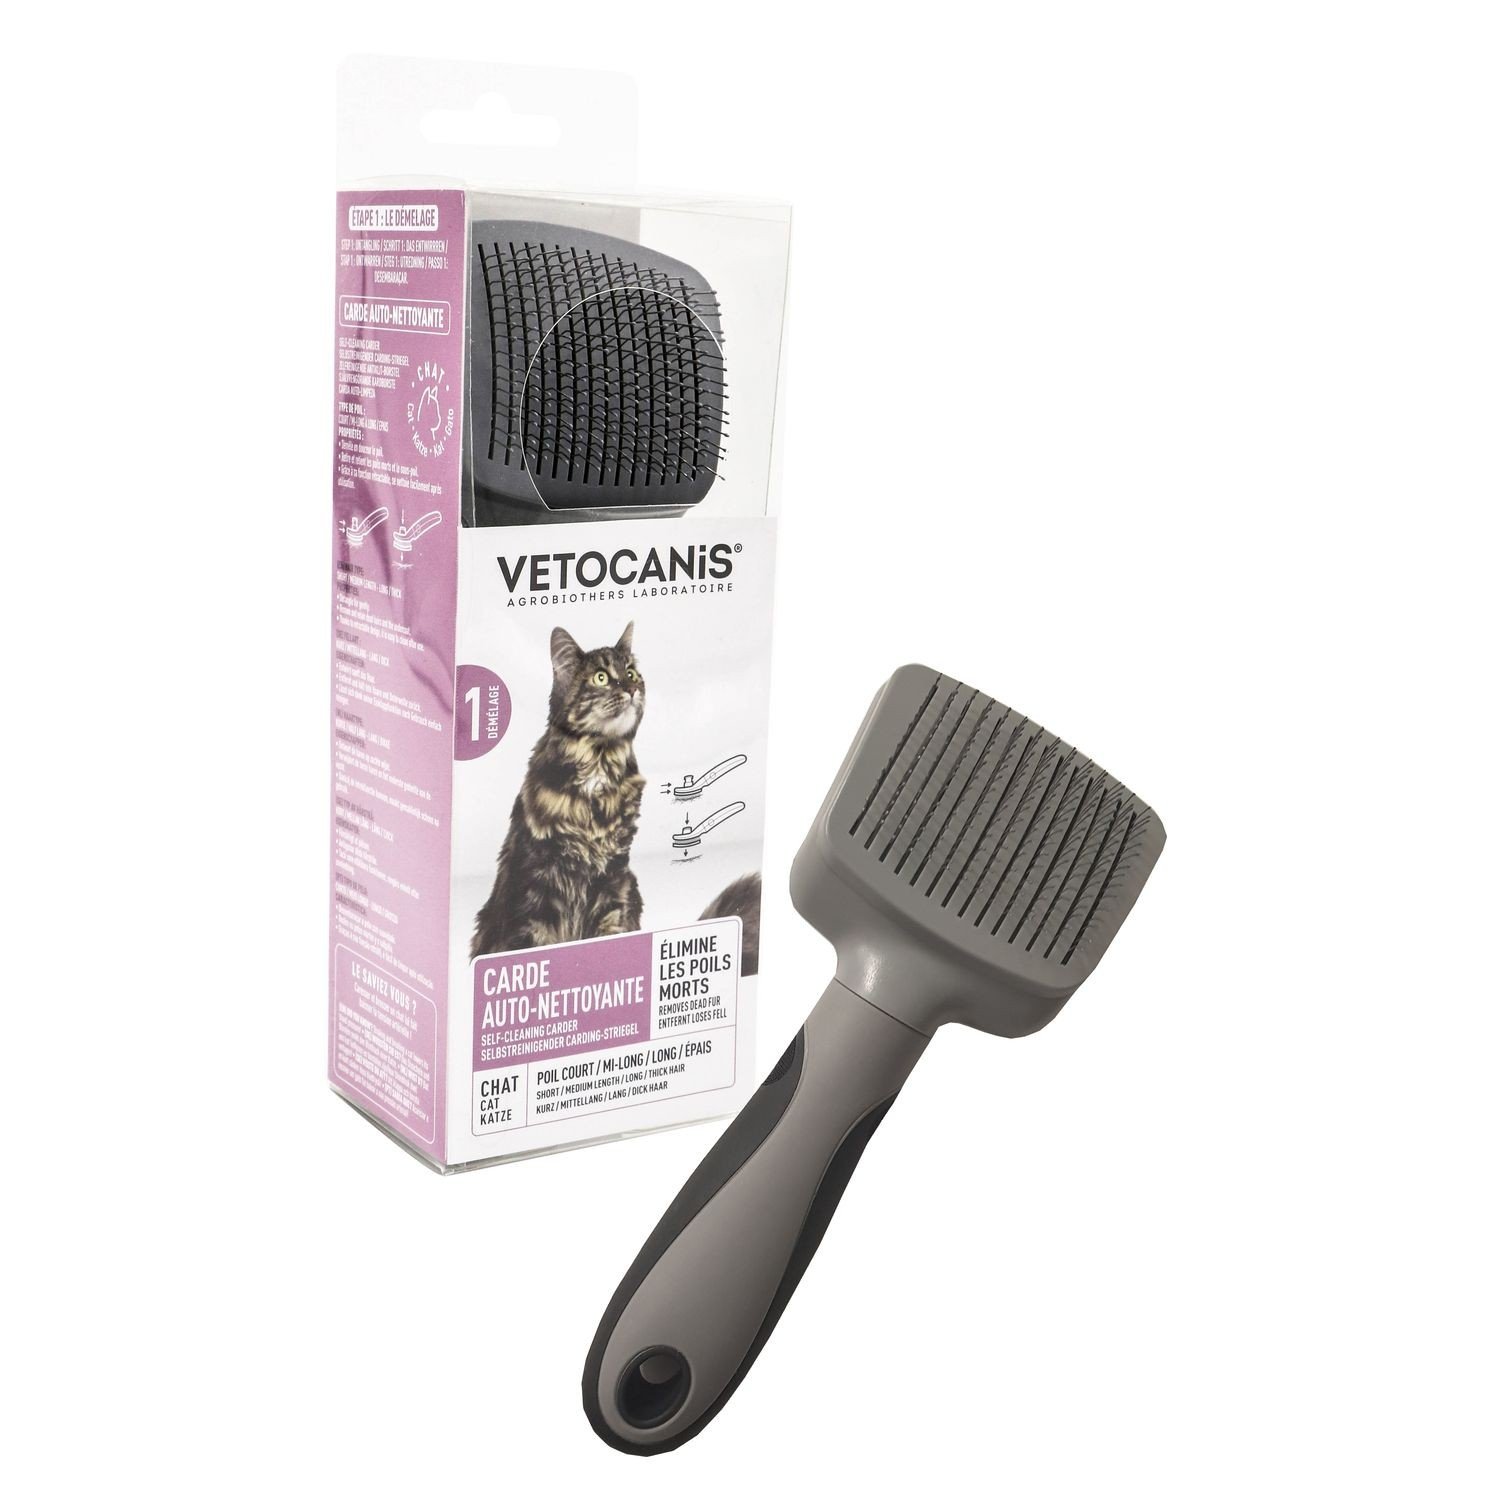 Vetocanis Carde pour chat, rétractable et autonettoyante 